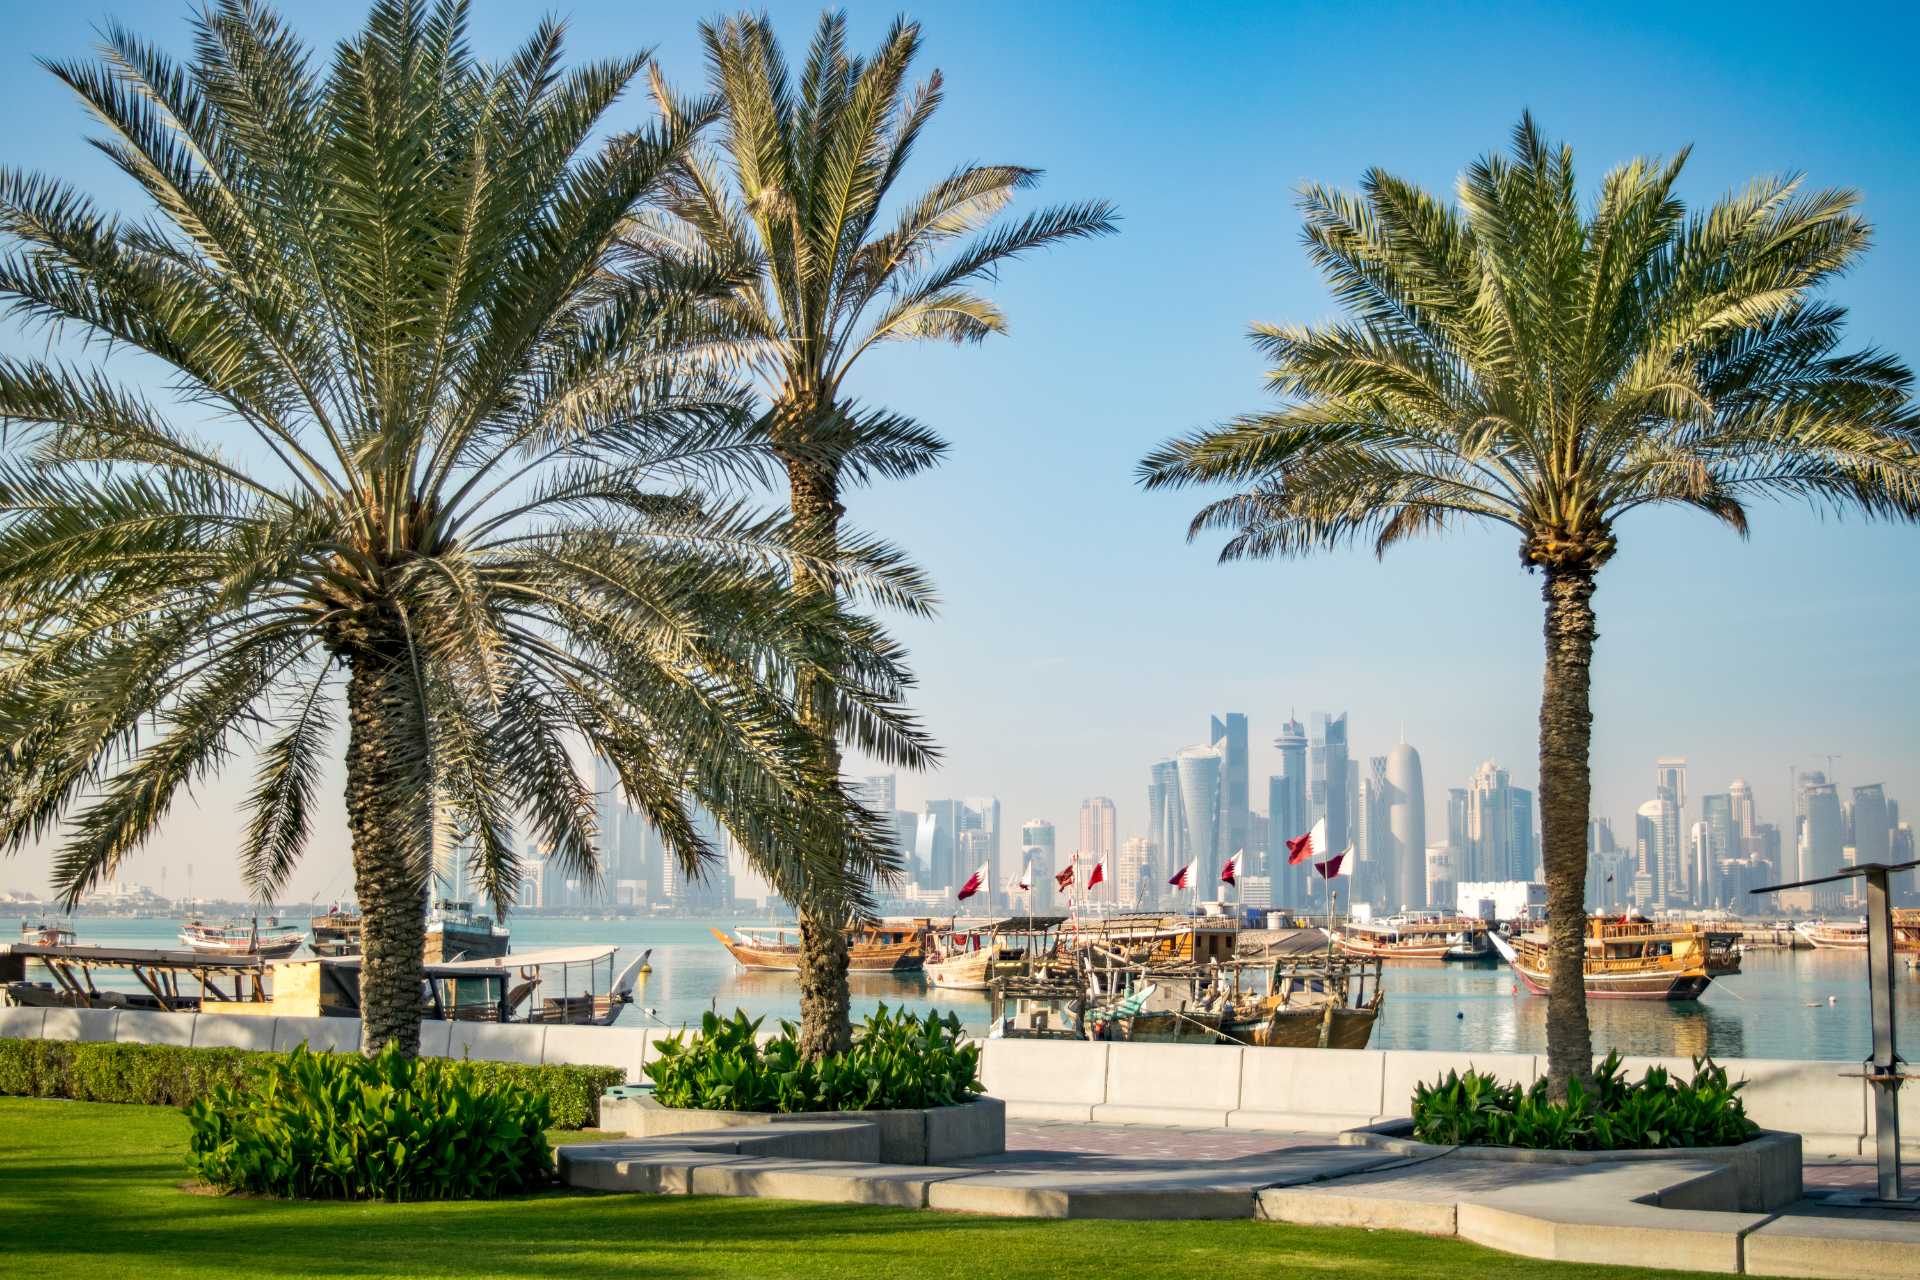 Corniche and Doha Skyline - Doha, Qatar ©Getty Images